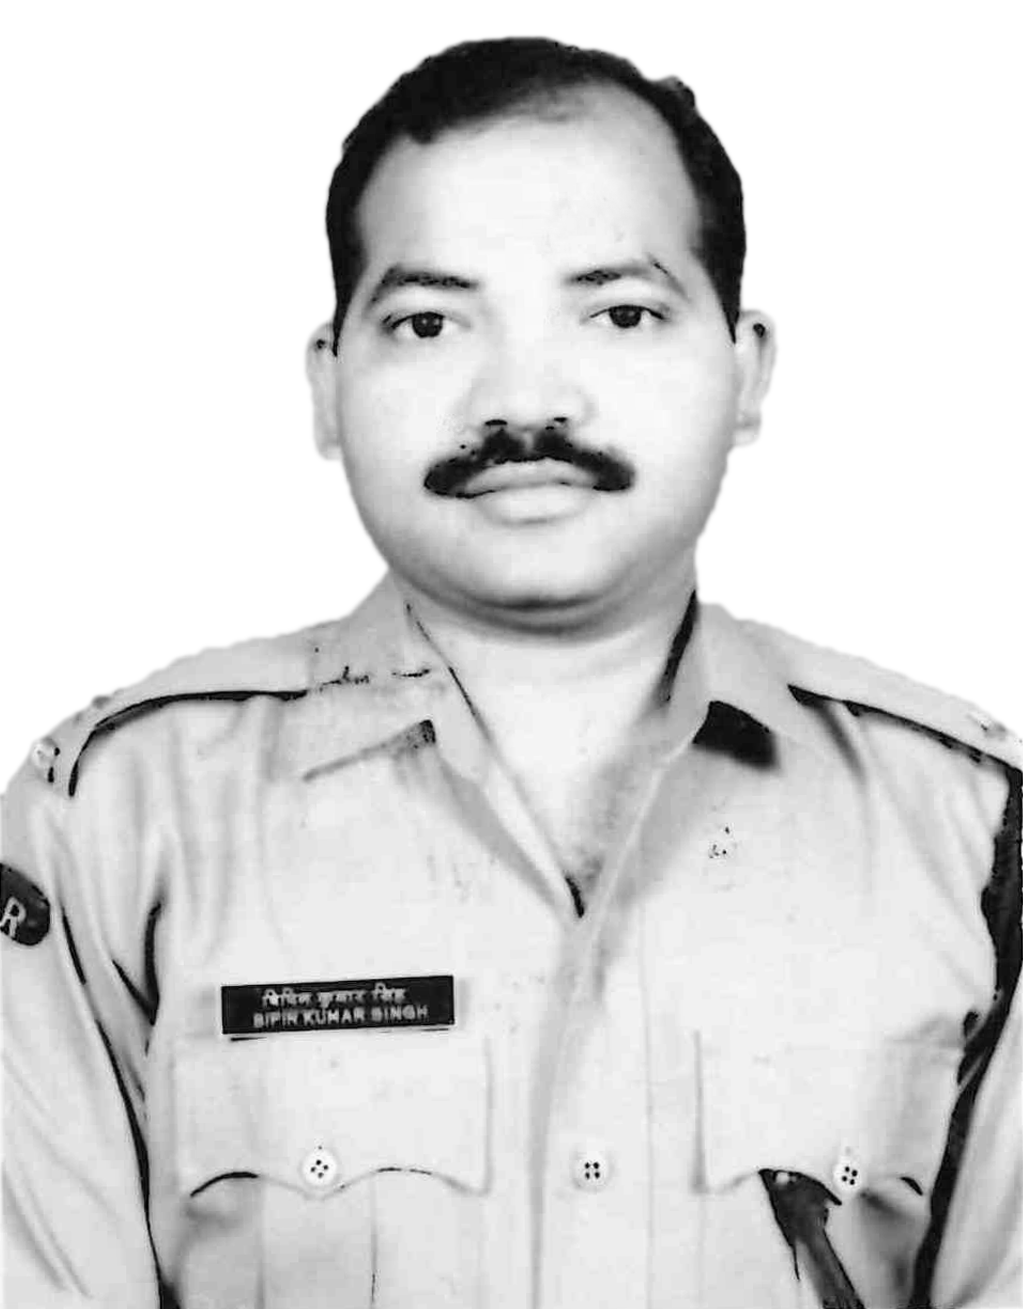 Singh Bipin Kumar